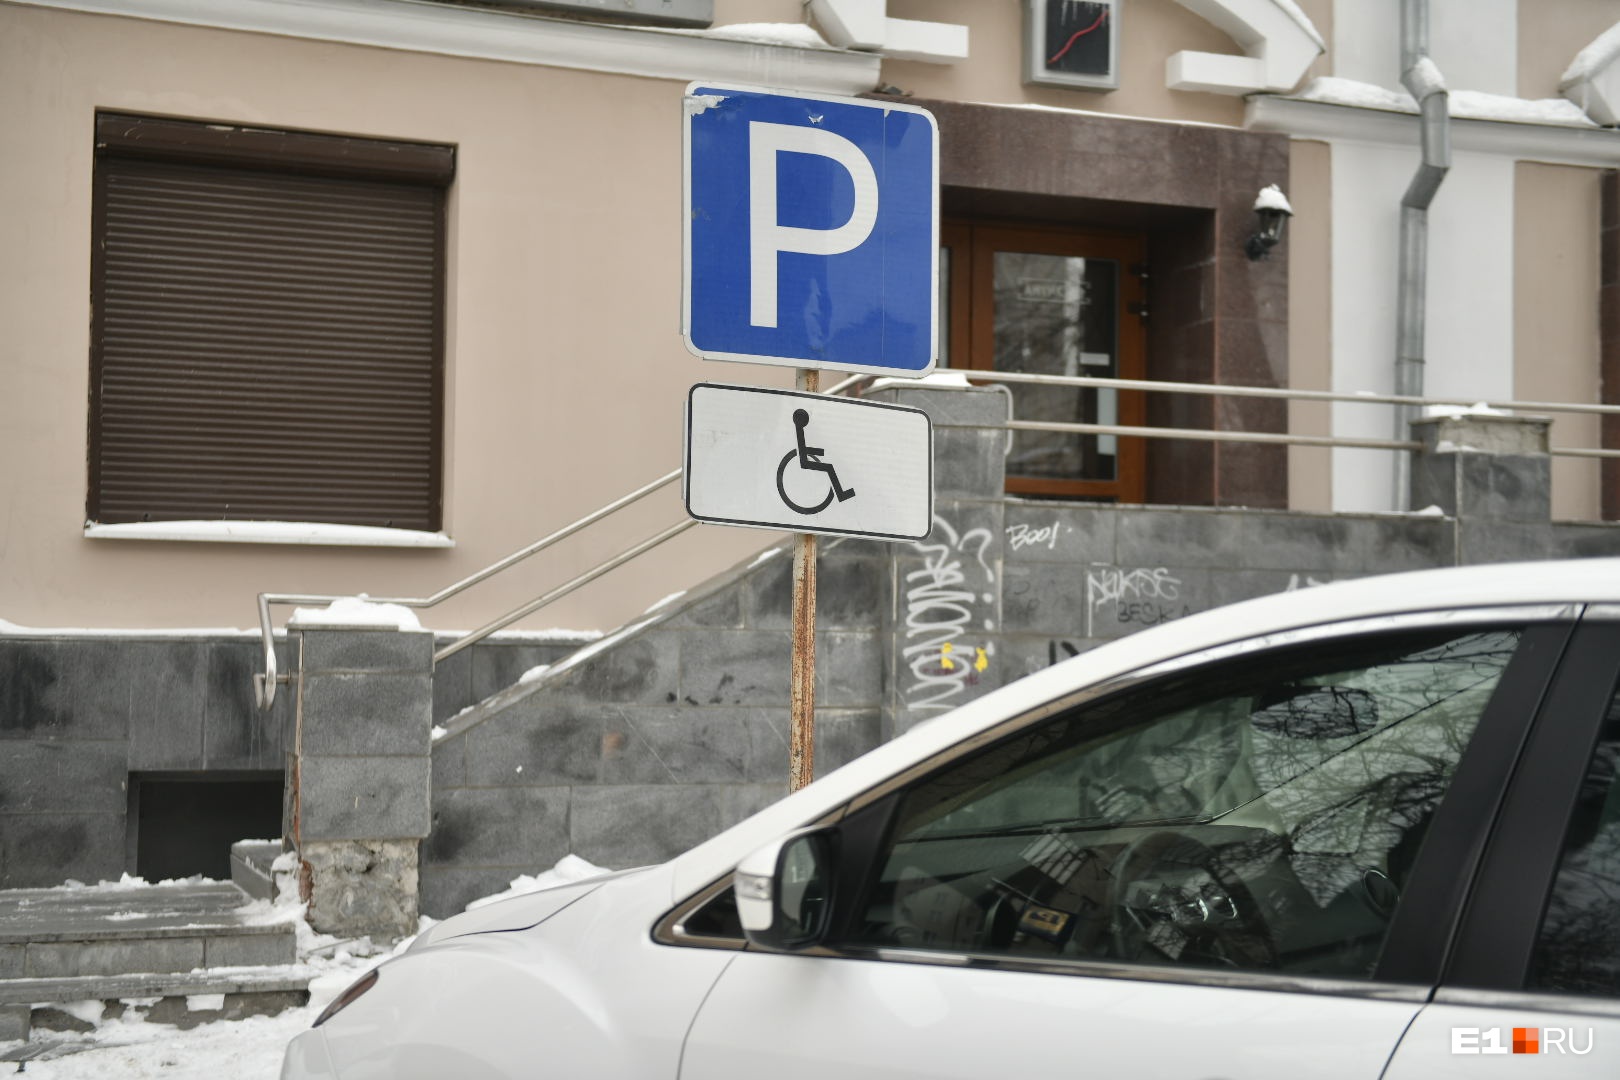 В Екатеринбурге отец ребенка с ДЦП объявил войну автохамам, которые паркуются на месте для инвалидов